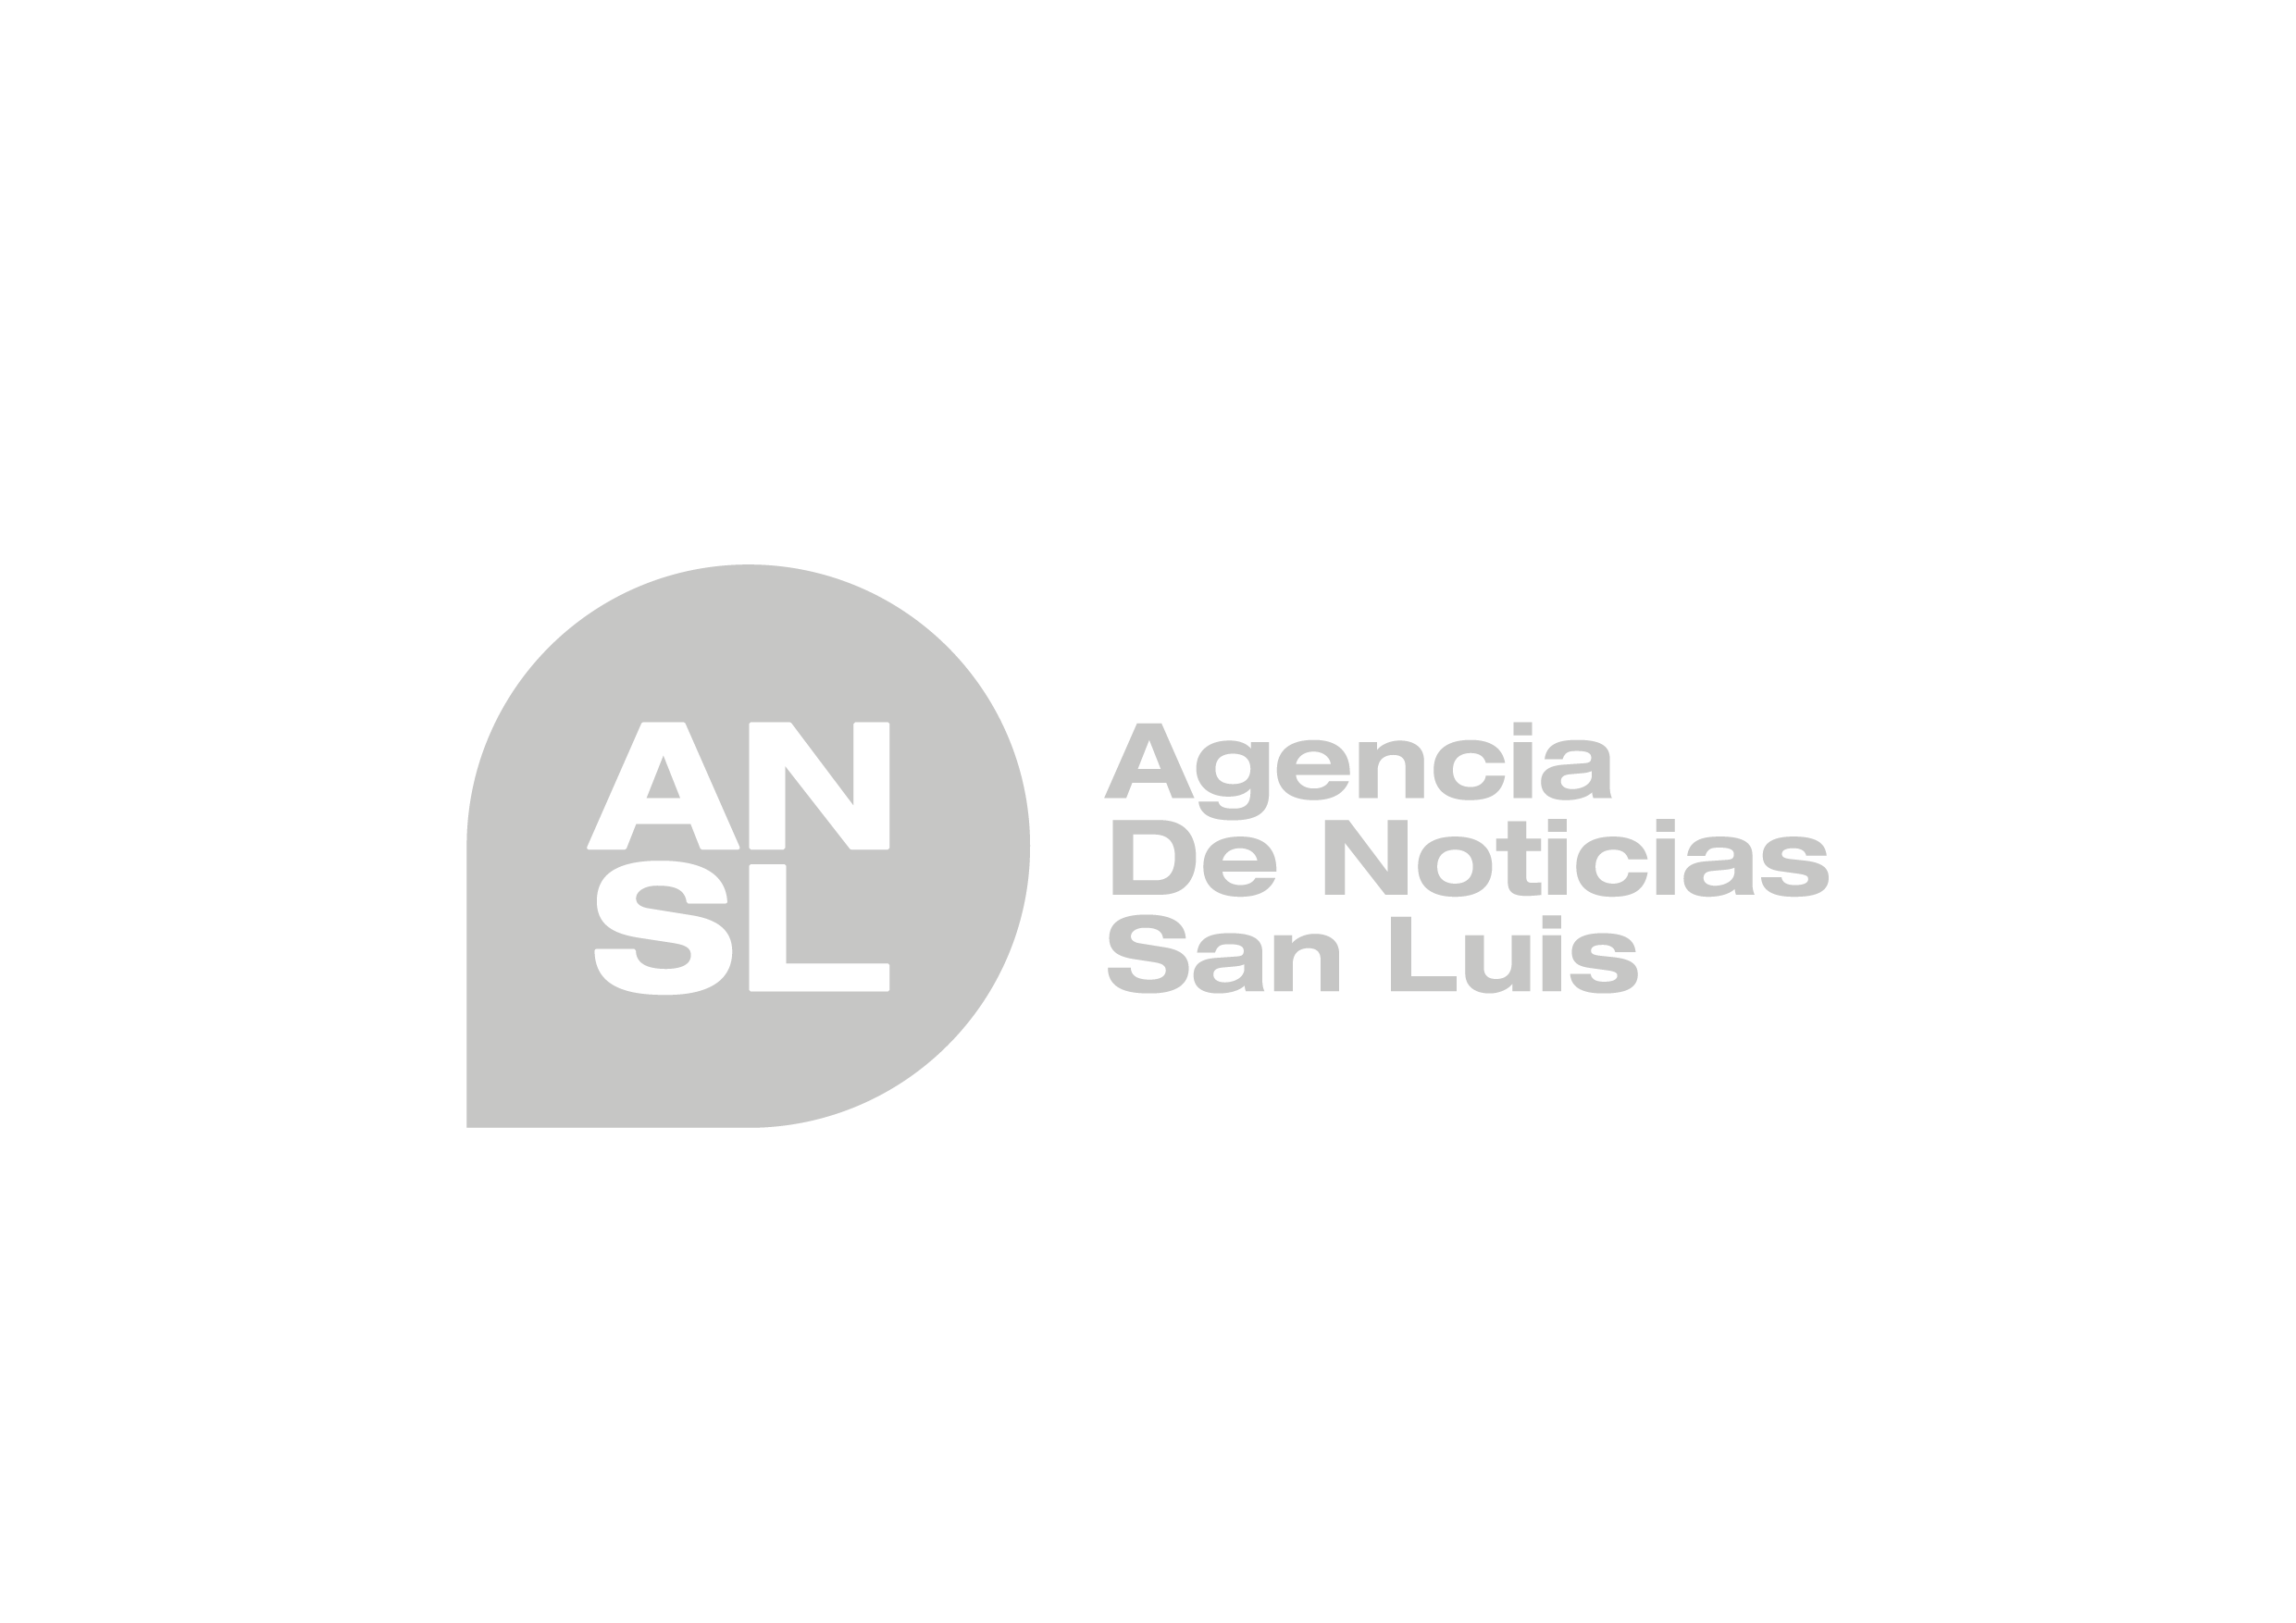 Agencia de Noticias San Luis